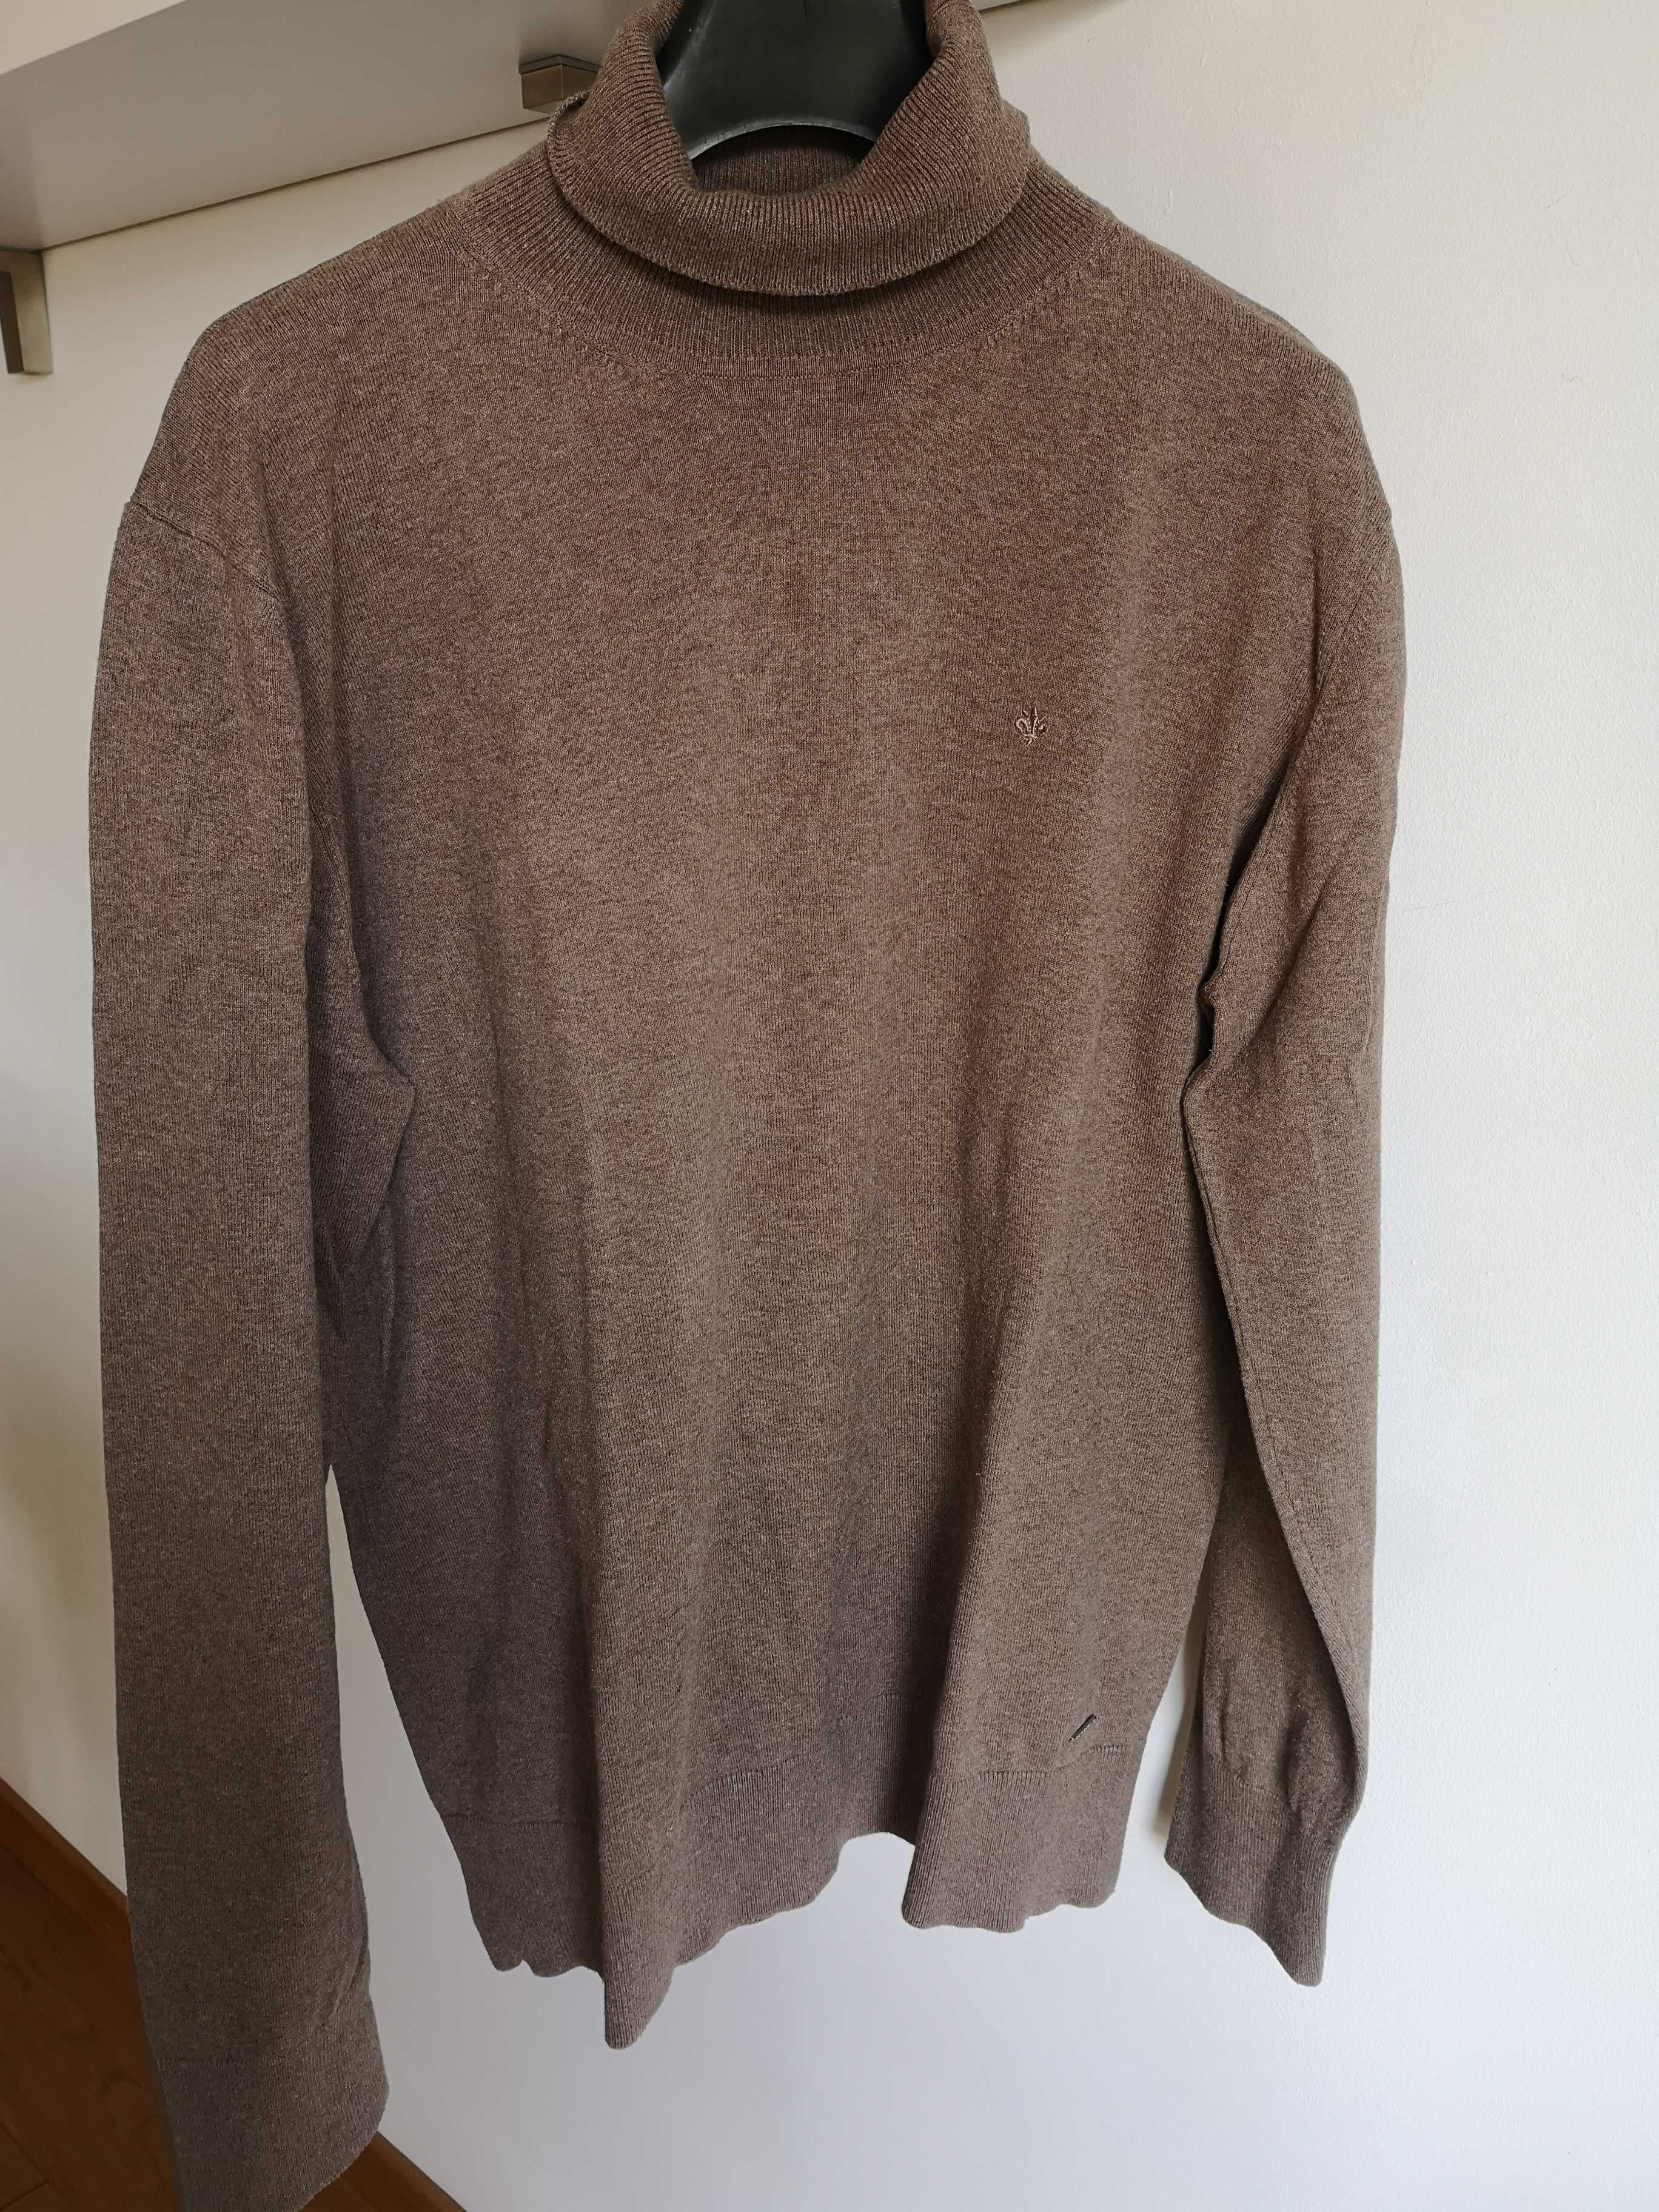 In Linea brązowy sweterek golf 52/ L /XL